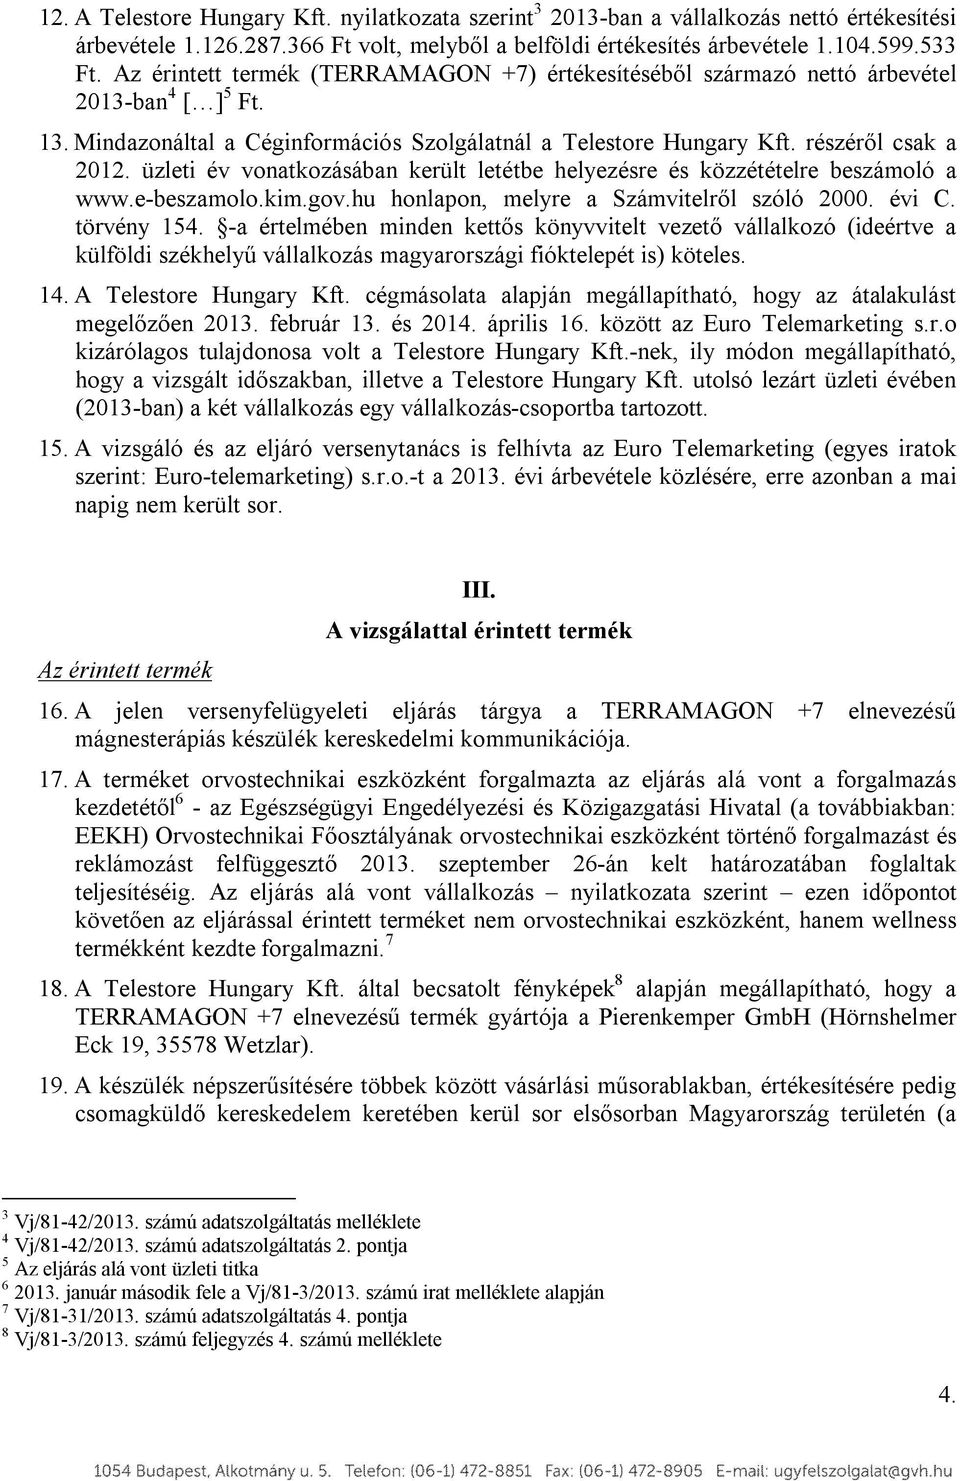 üzleti év vonatkozásában került letétbe helyezésre és közzétételre beszámoló a www.e-beszamolo.kim.gov.hu honlapon, melyre a Számvitelről szóló 2000. évi C. törvény 154.